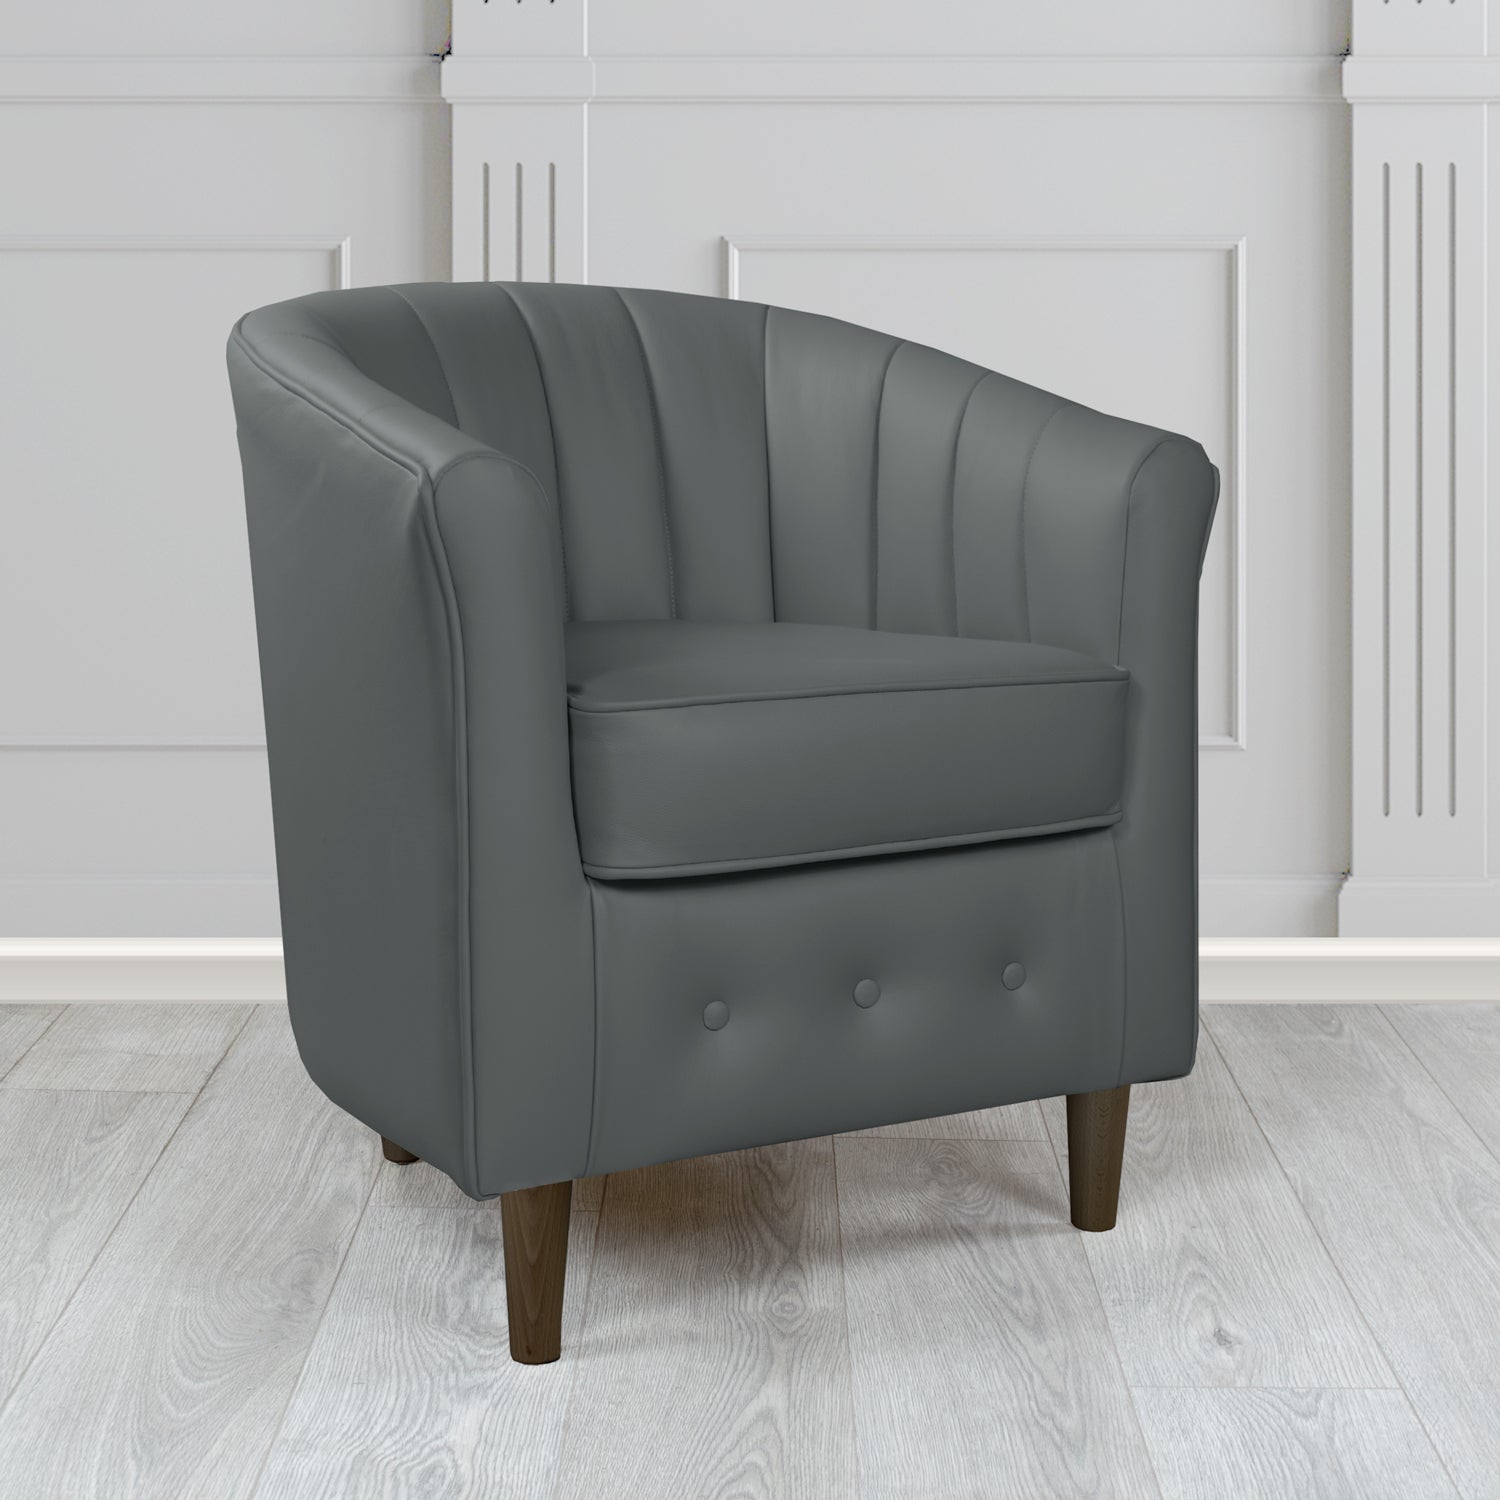 Doha Tub Chair in Vele Charcoal Grey Crib 5 Genuine Leather